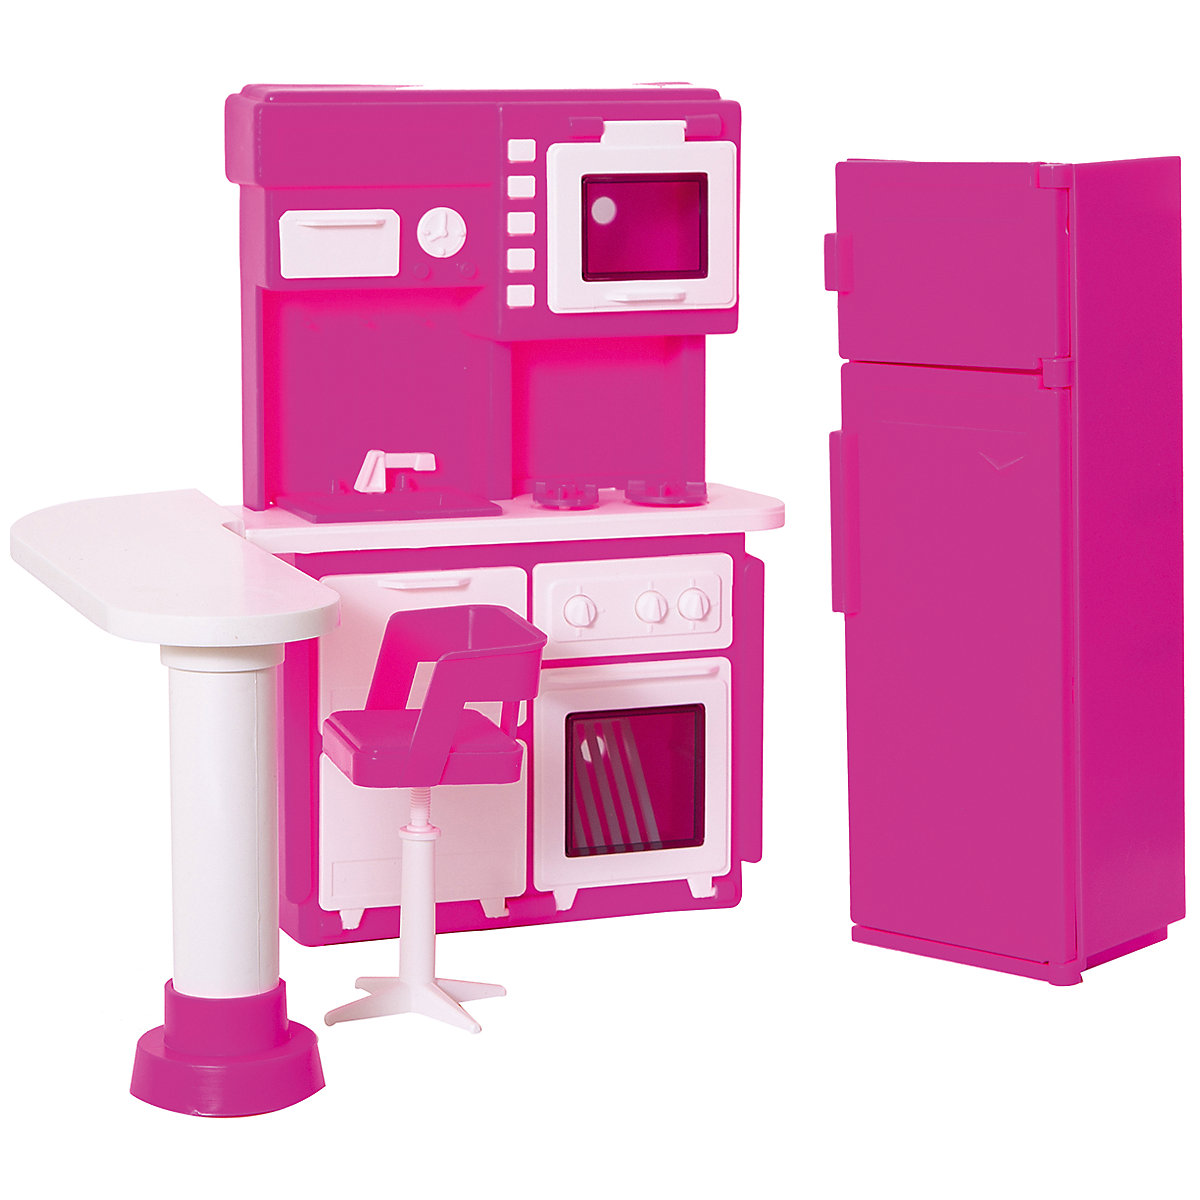 мебель кухня для куклы розовая с 1388 огонек